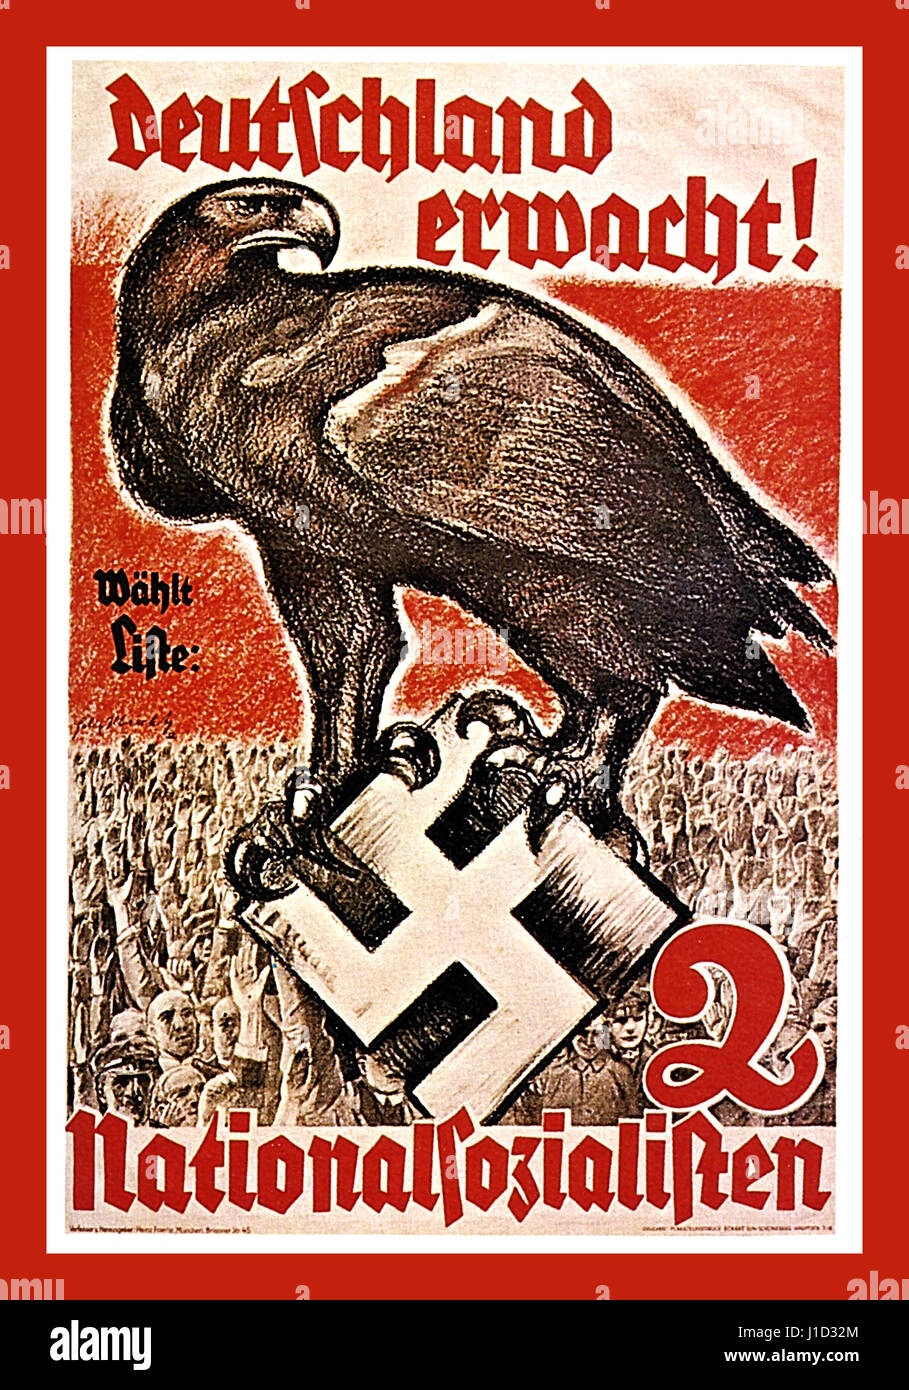 deutschland-erwacht-cartel-de-propaganda-nazi-aleman-de-la-decada-de-1930-para-el-partido-nacionalsocialista-diciendo-alemania-despierta-elegir-la-vida-con-un-aguila-alemana-agarrando-un-simbolo-brillante-del-emblema-de-swastika-j1d32m.jpg